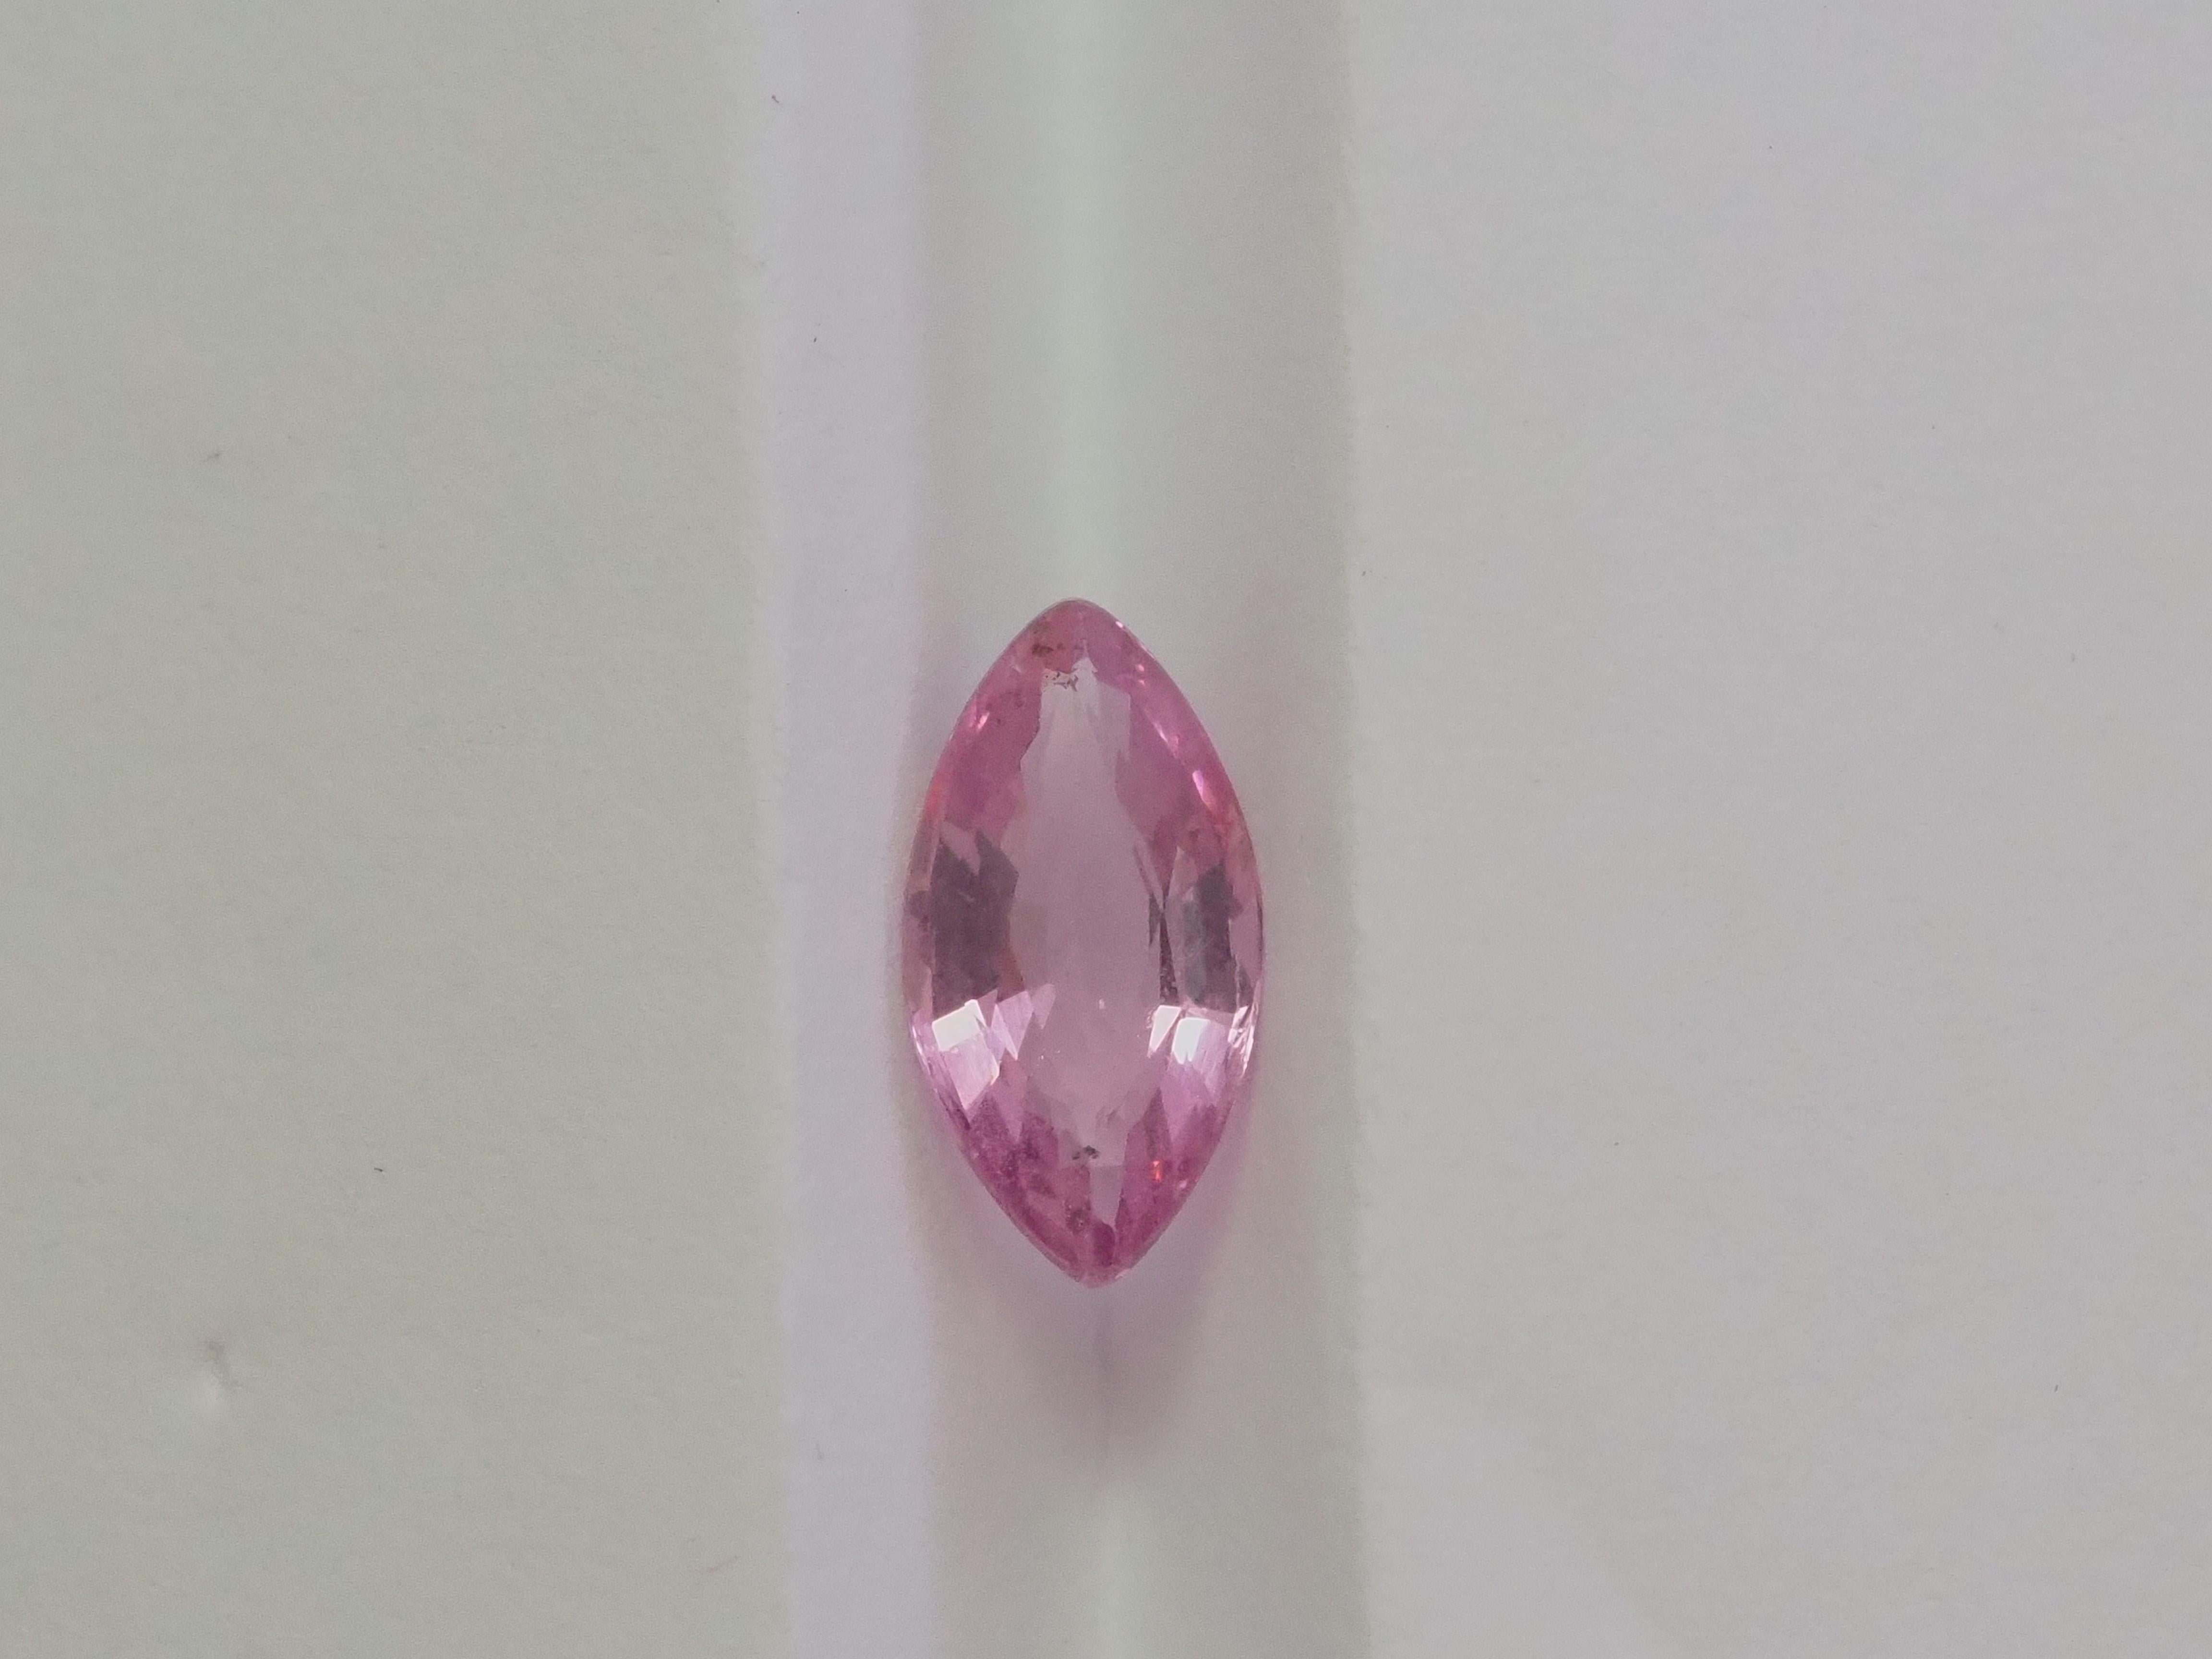 Nettoyage des yeux - VVS

Cette pierre précieuse mesure environ 5,08 x 9,79 x 3,25 mm, ce qui laisse suffisamment d'espace pour des créations de bijoux complexes et créatifs. 

Spinelle de Birmanie populaire de couleur rose vif, taillée en marquise,